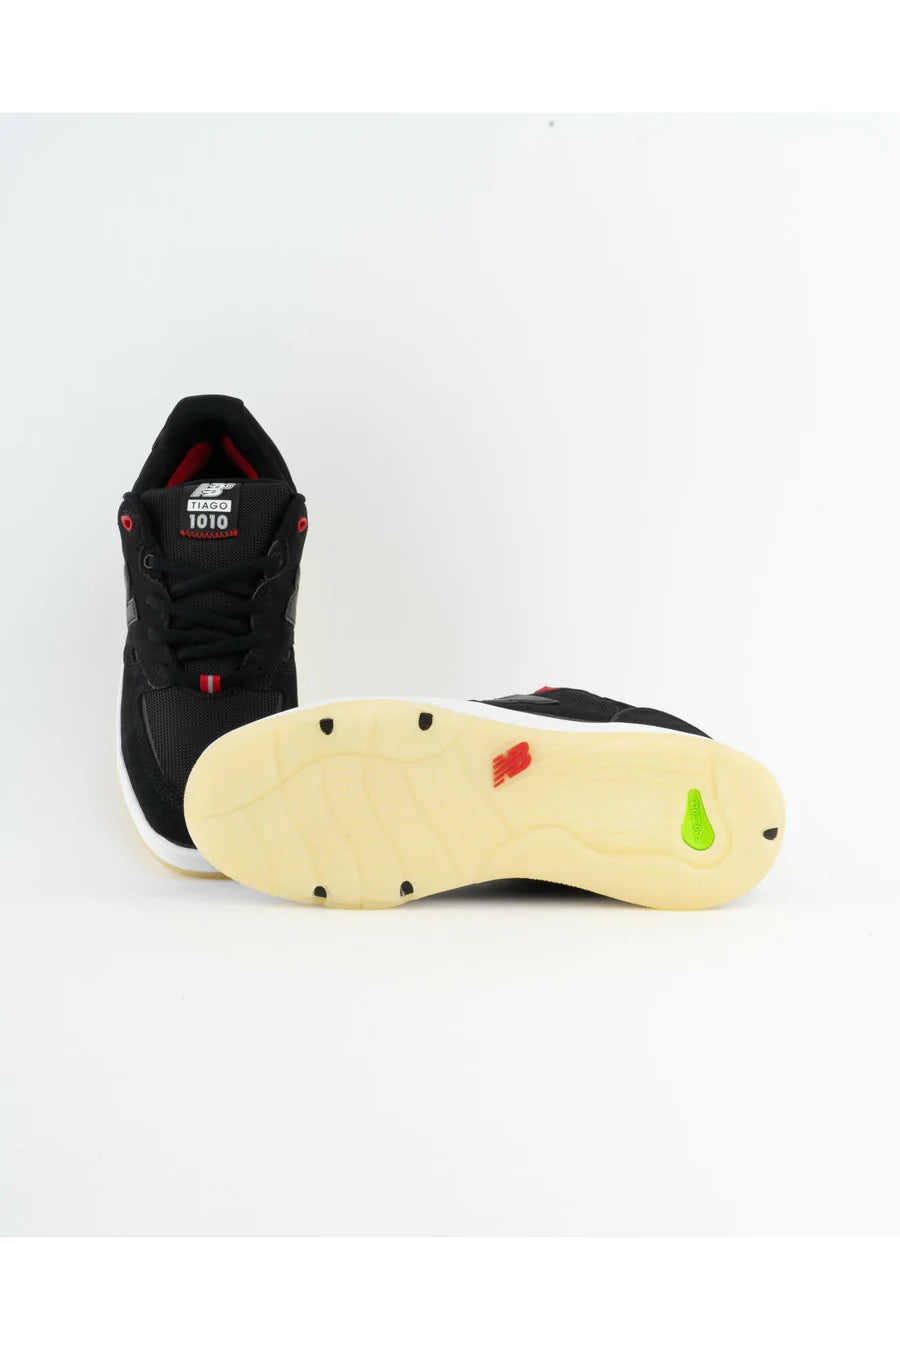 Chaussures de skate New Balance NM 1010 - Noir